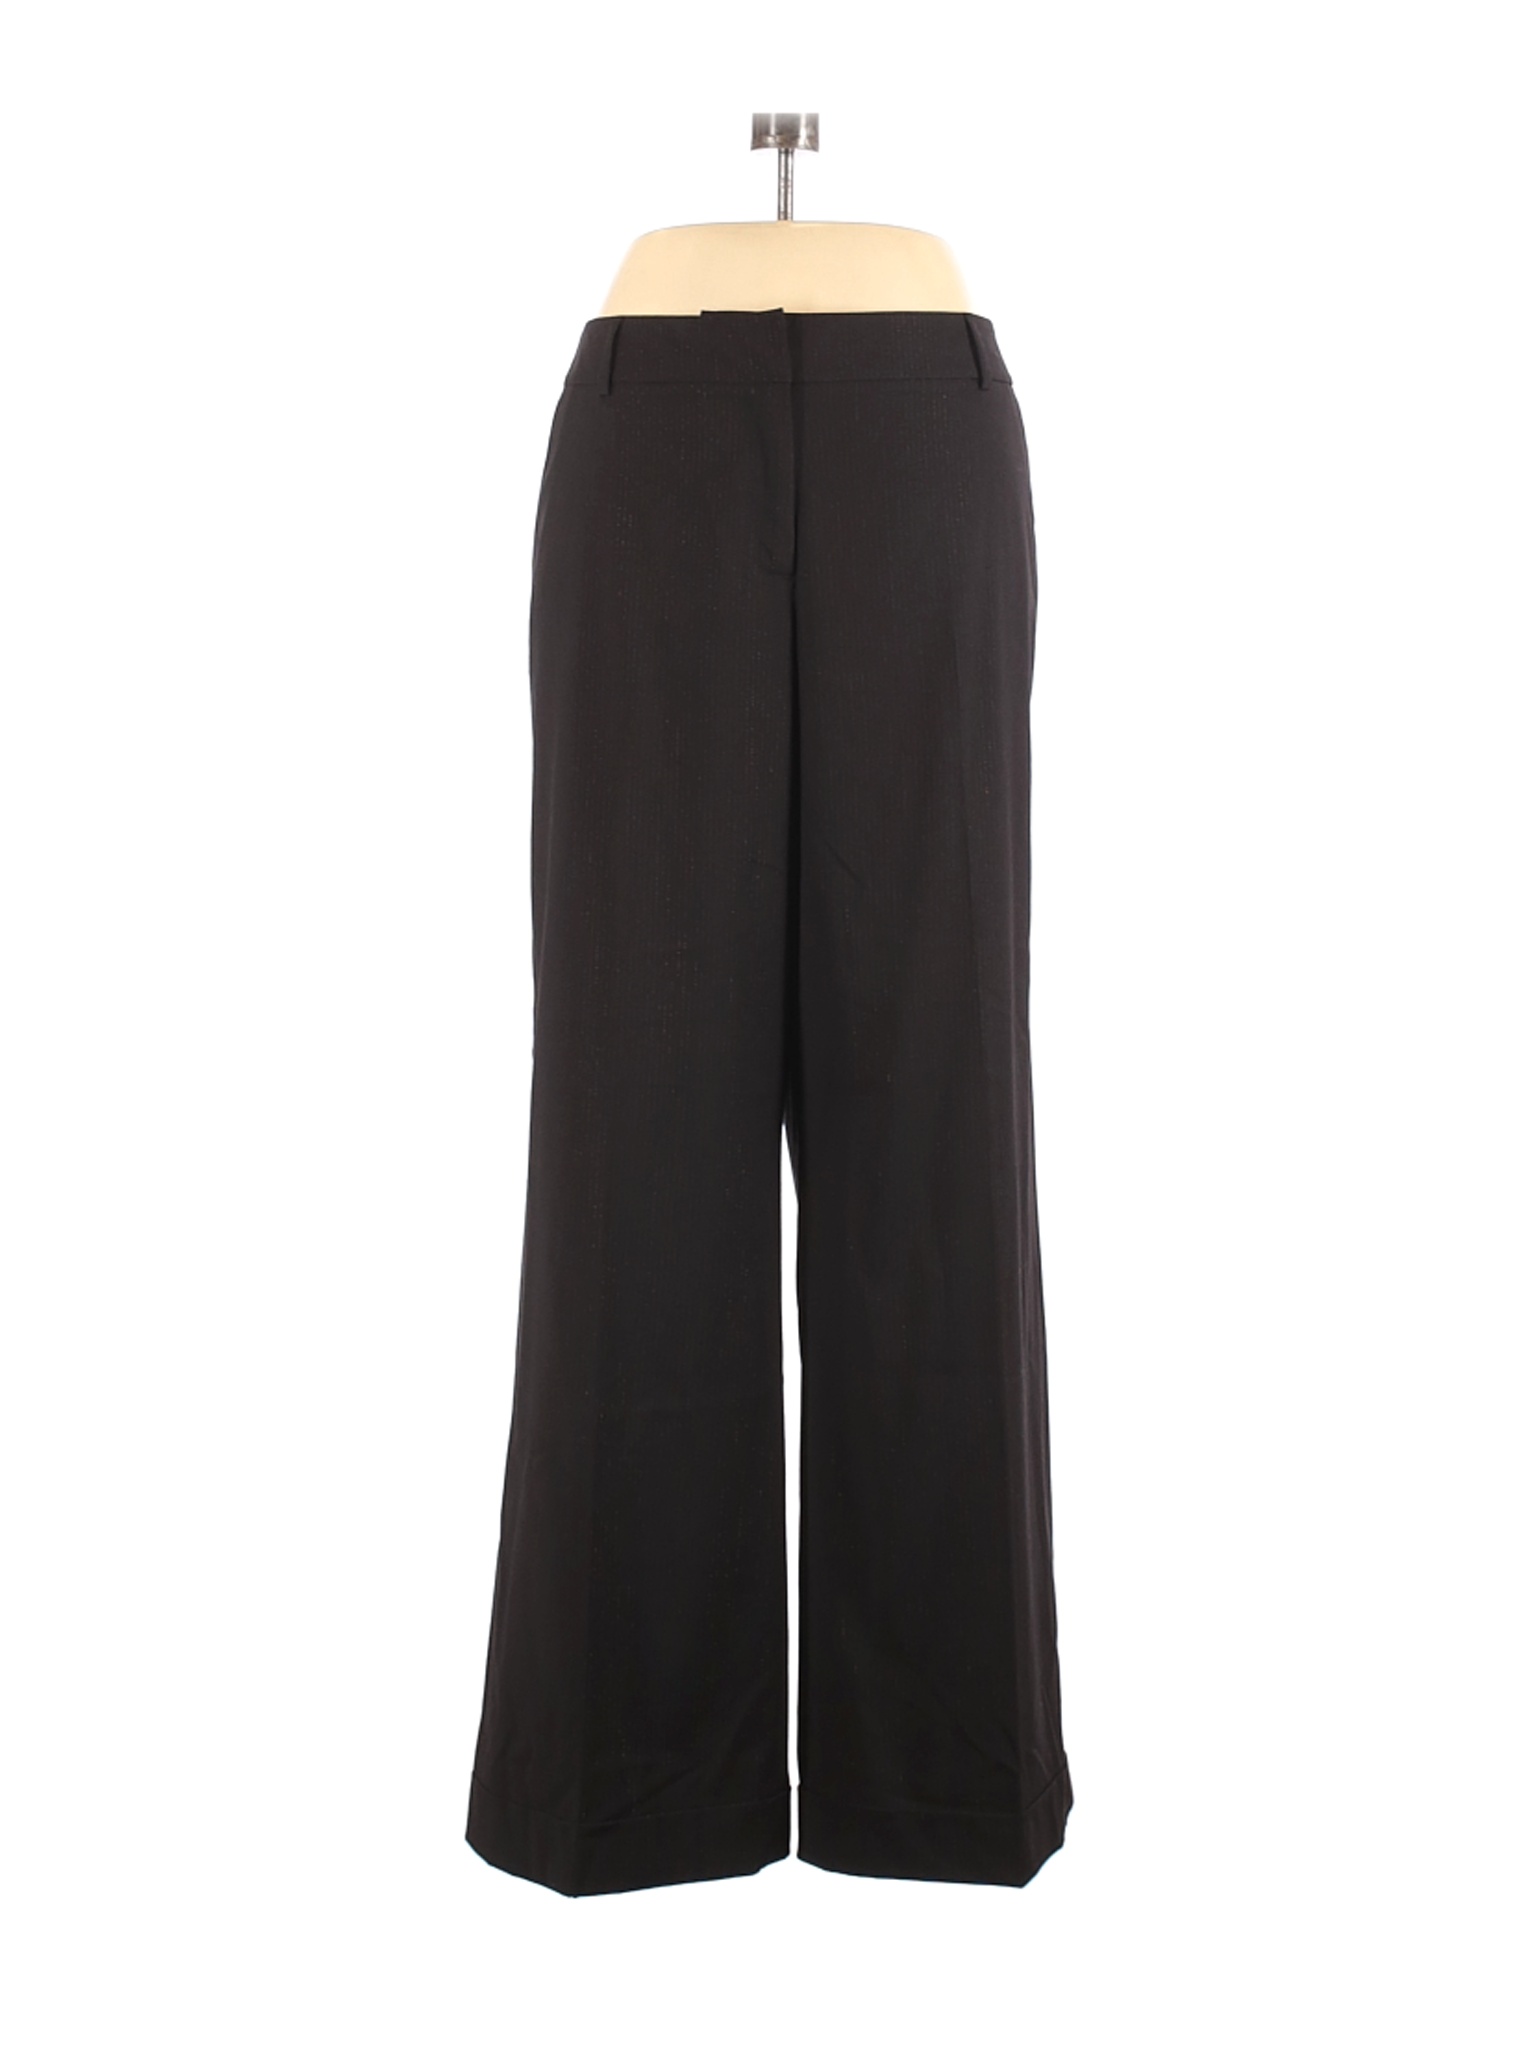 Lane Bryant Women Black Dress Pants 16 Plus | eBay